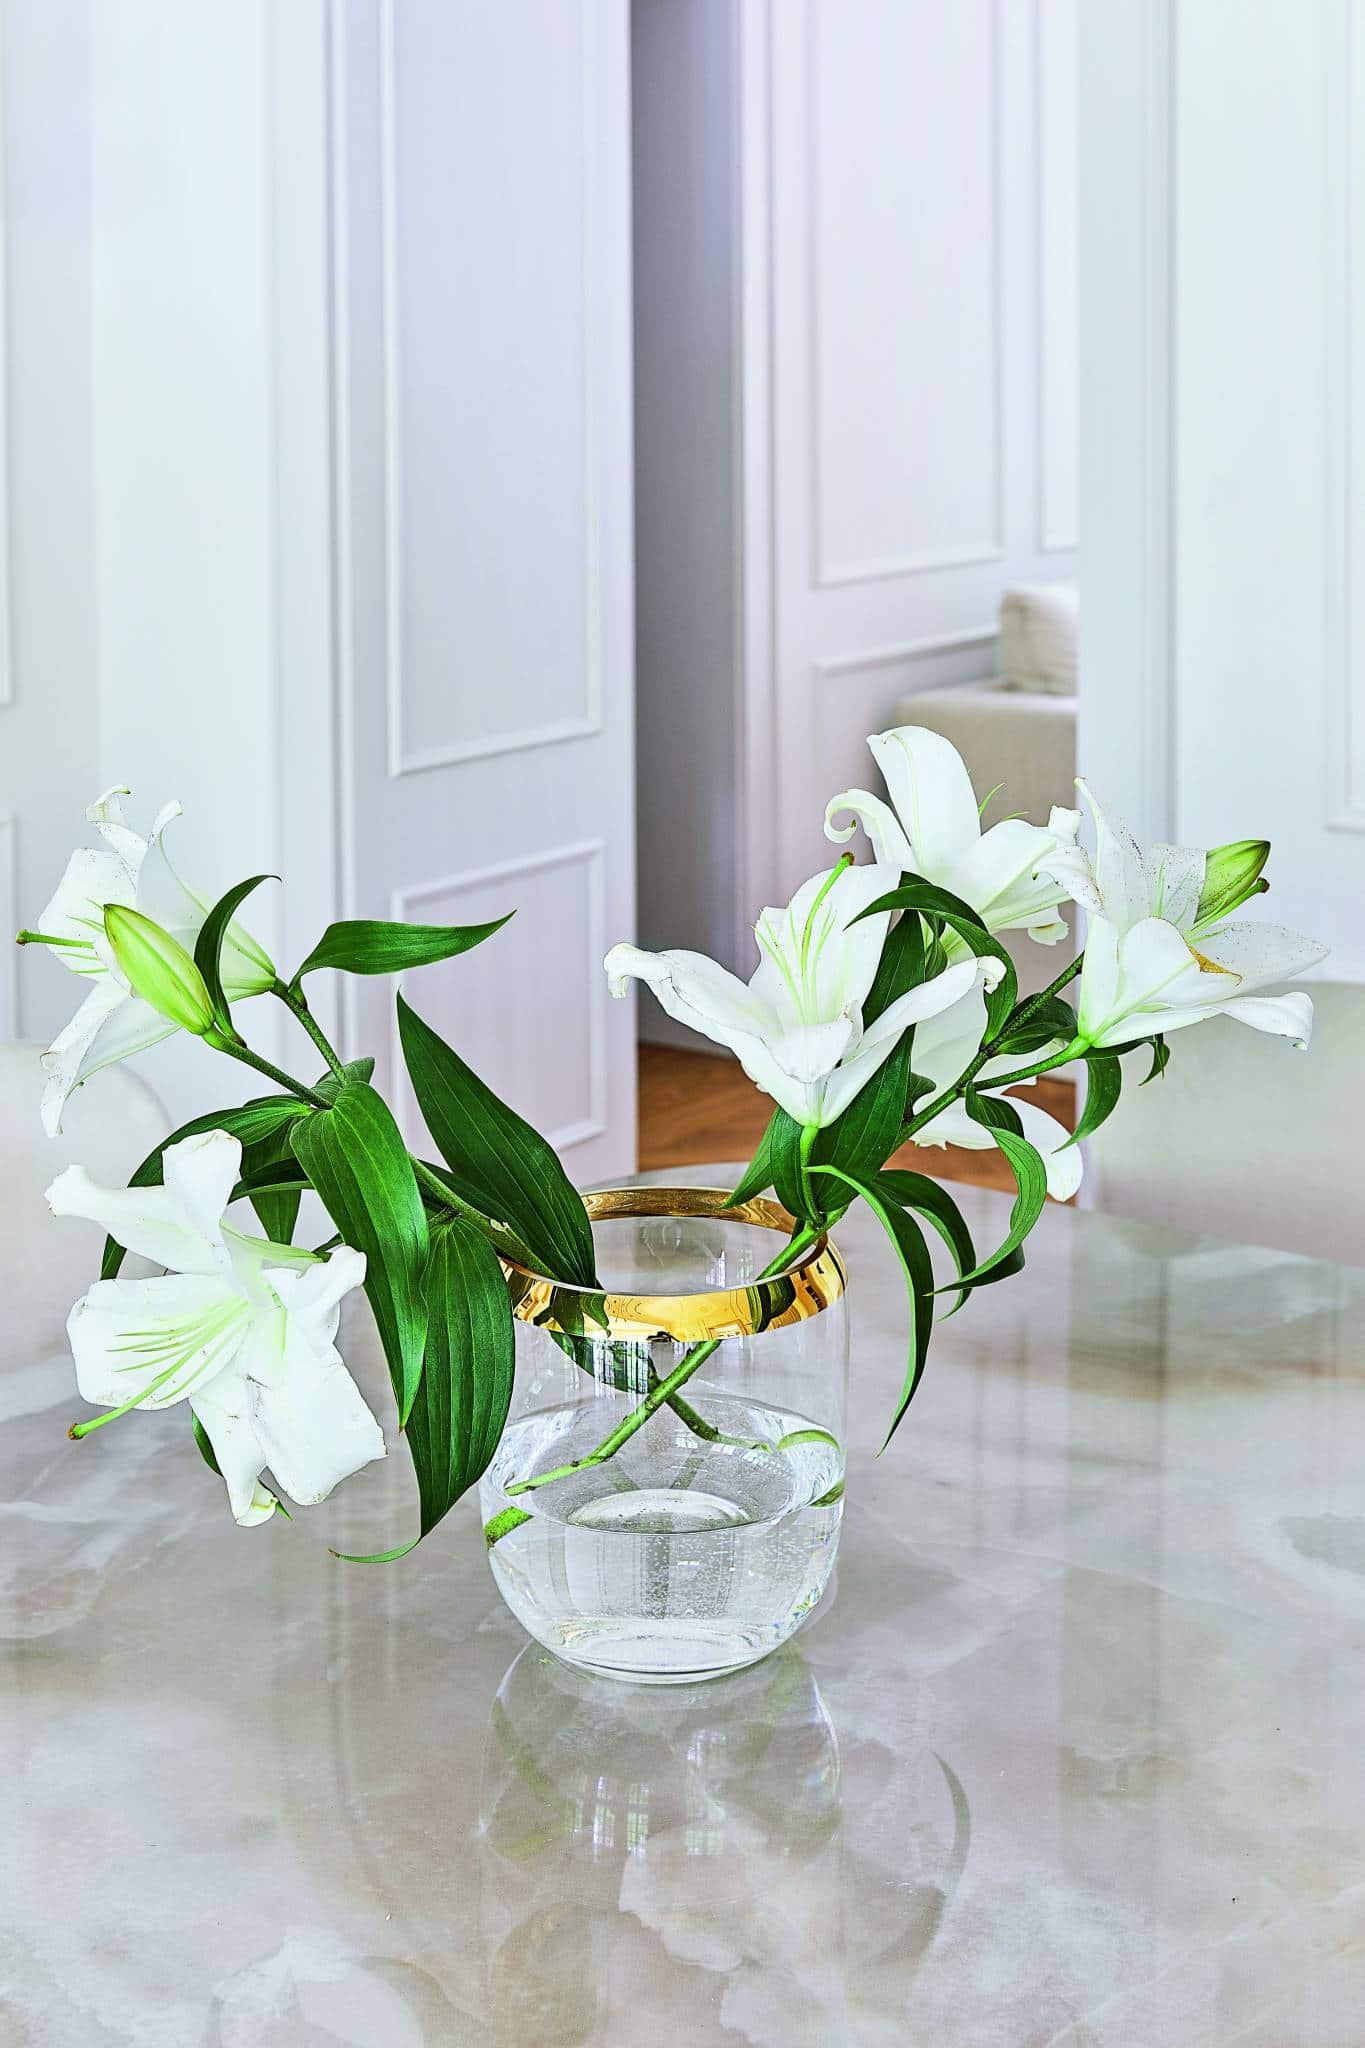  W mieszkaniu zawsze stoi kilka wazonów z kwiatami pochodzącymi z podwórza monachijskiej kamienicy (Fot. materiały prasowe)